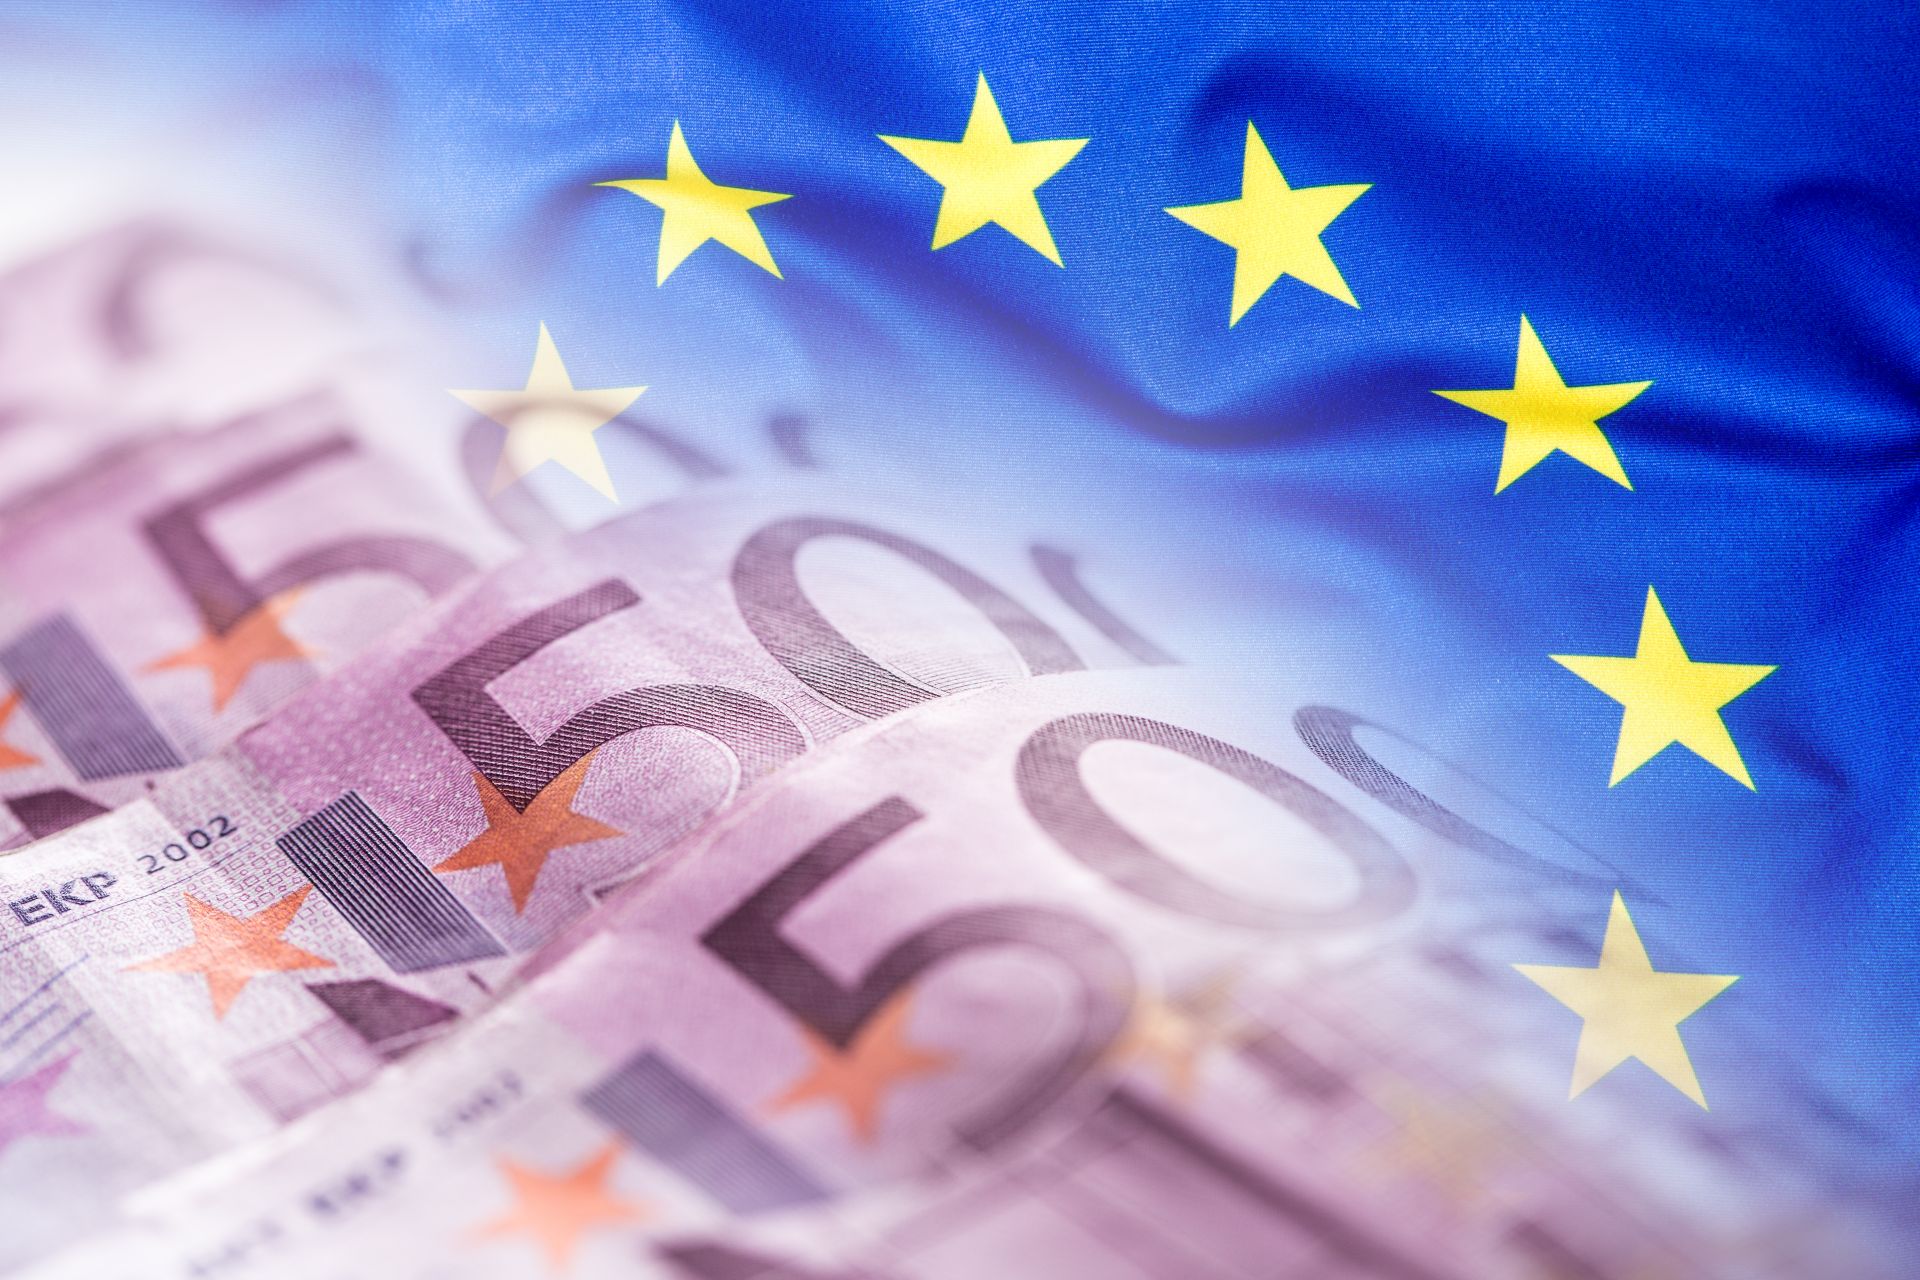 niebieska flaga UE i banknoty o wartości 500 euro